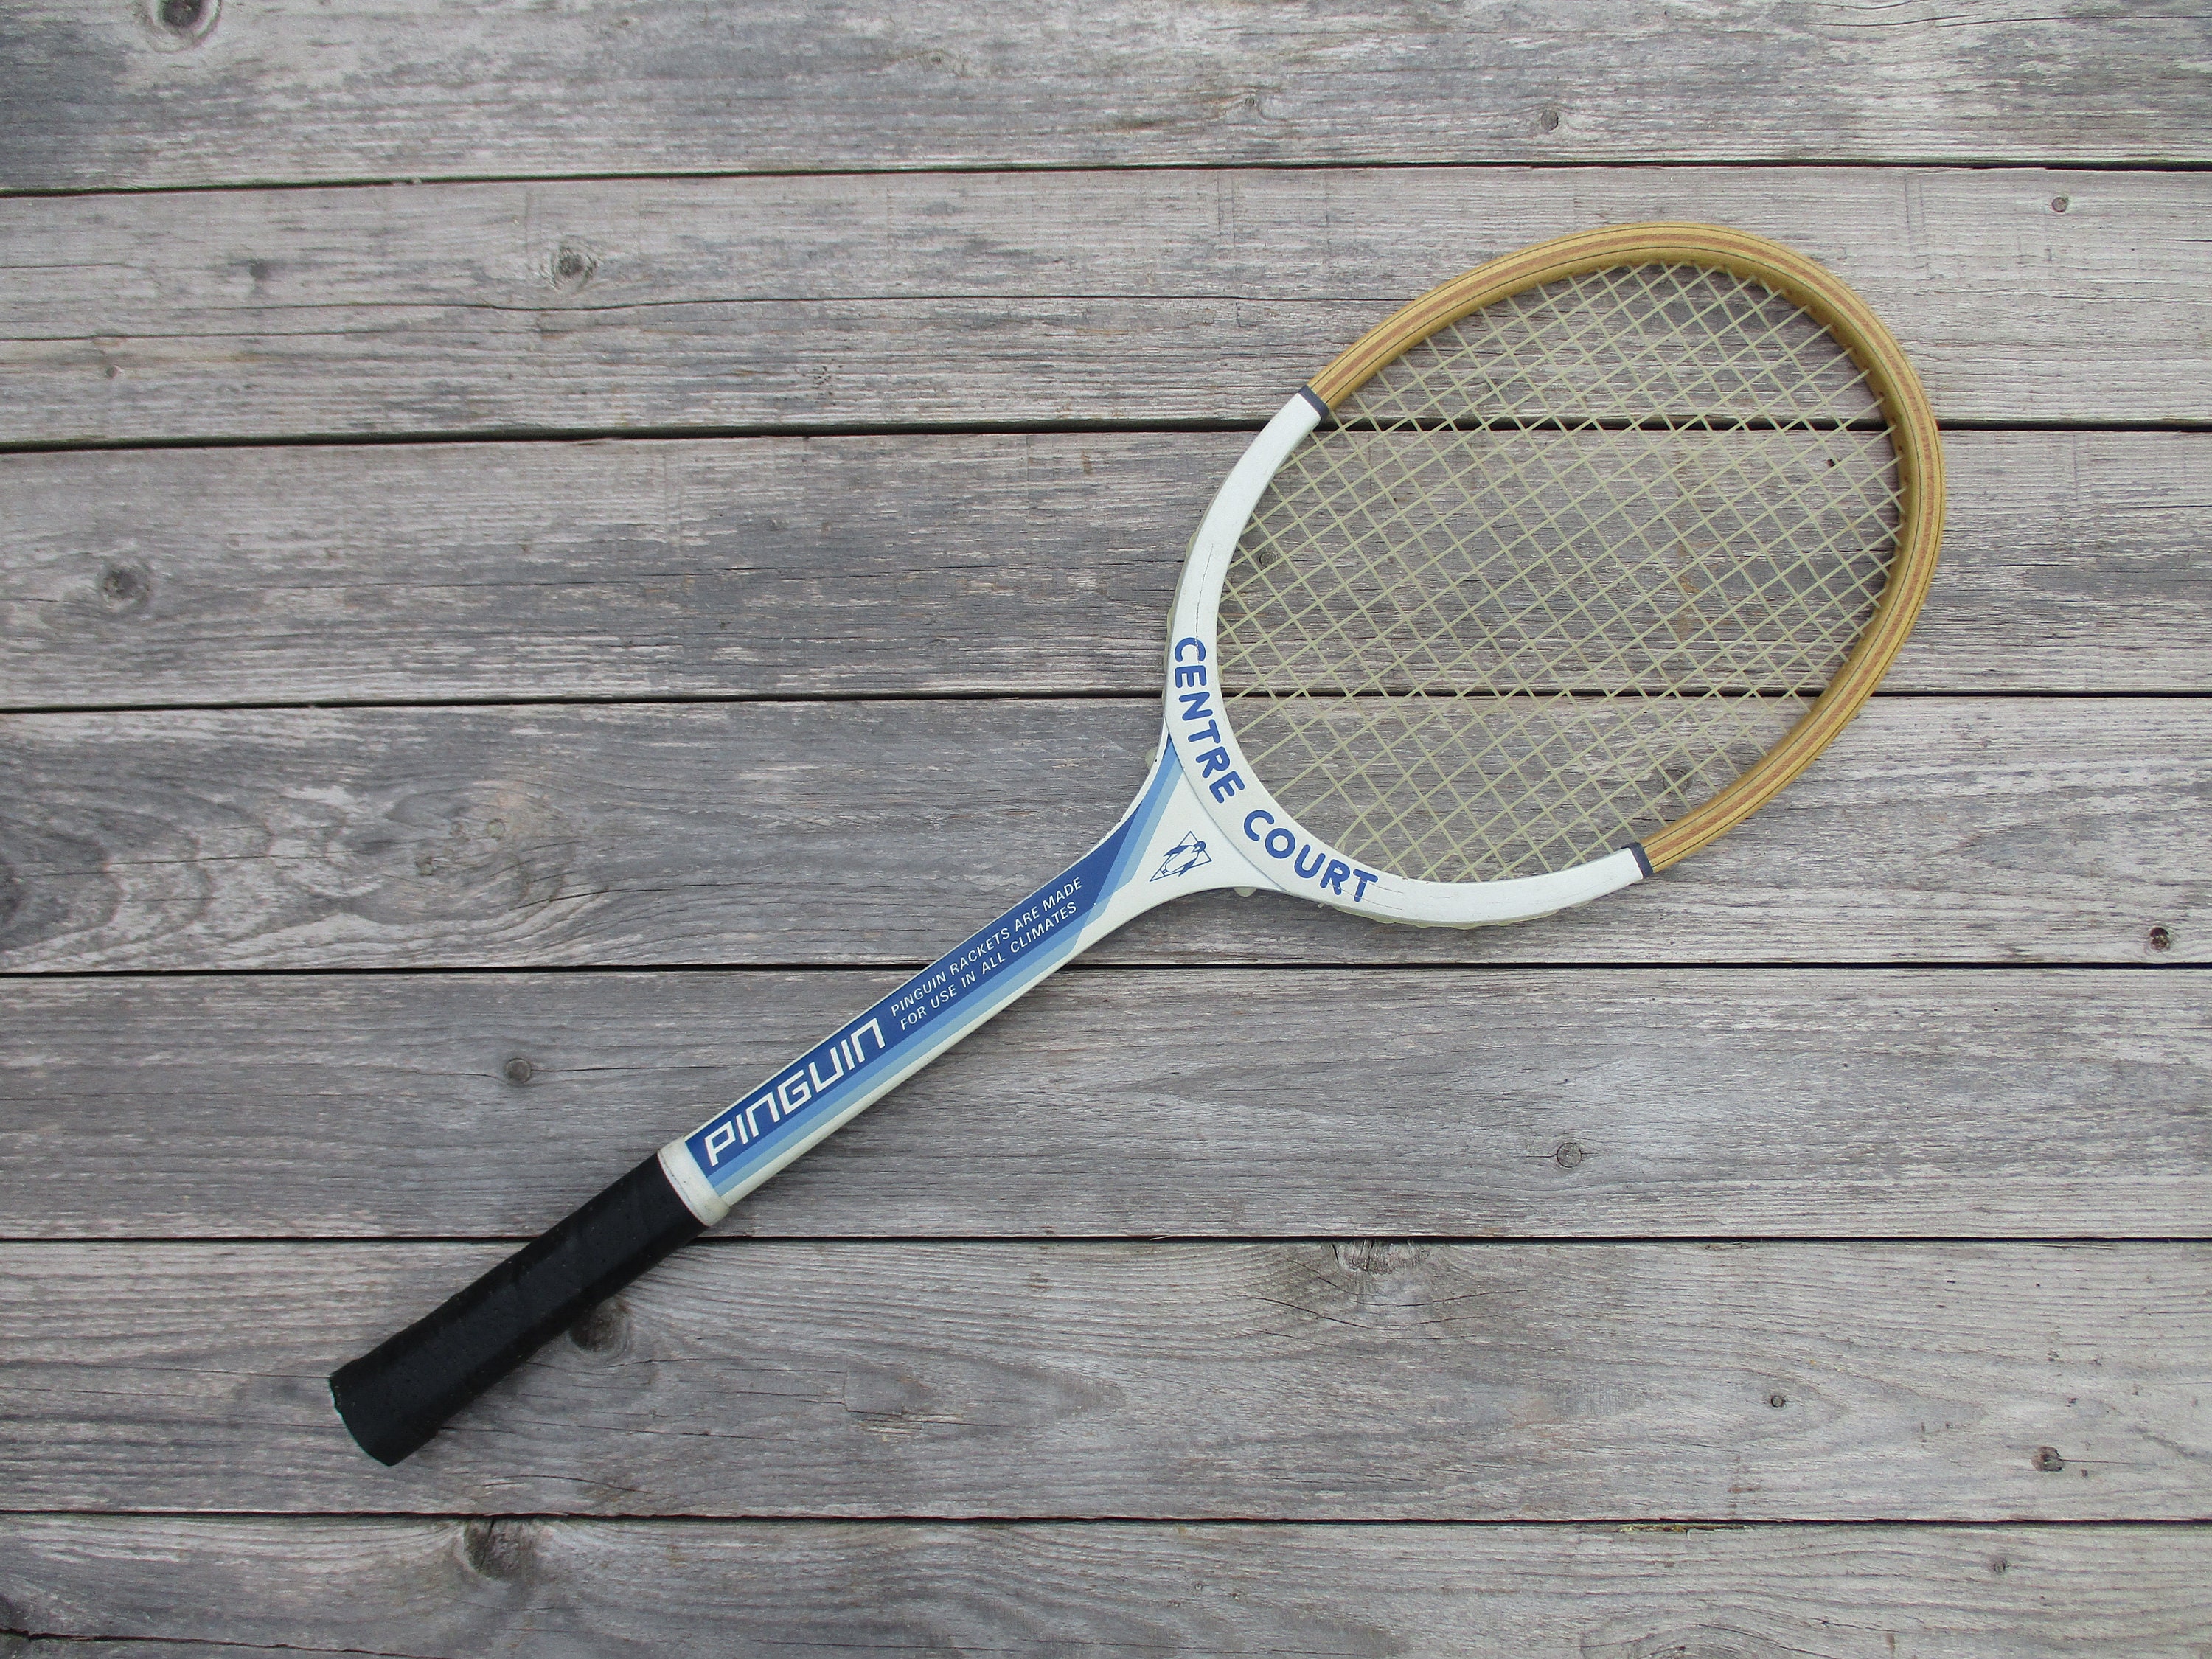 Raquette de tennis ancienne et sa housse